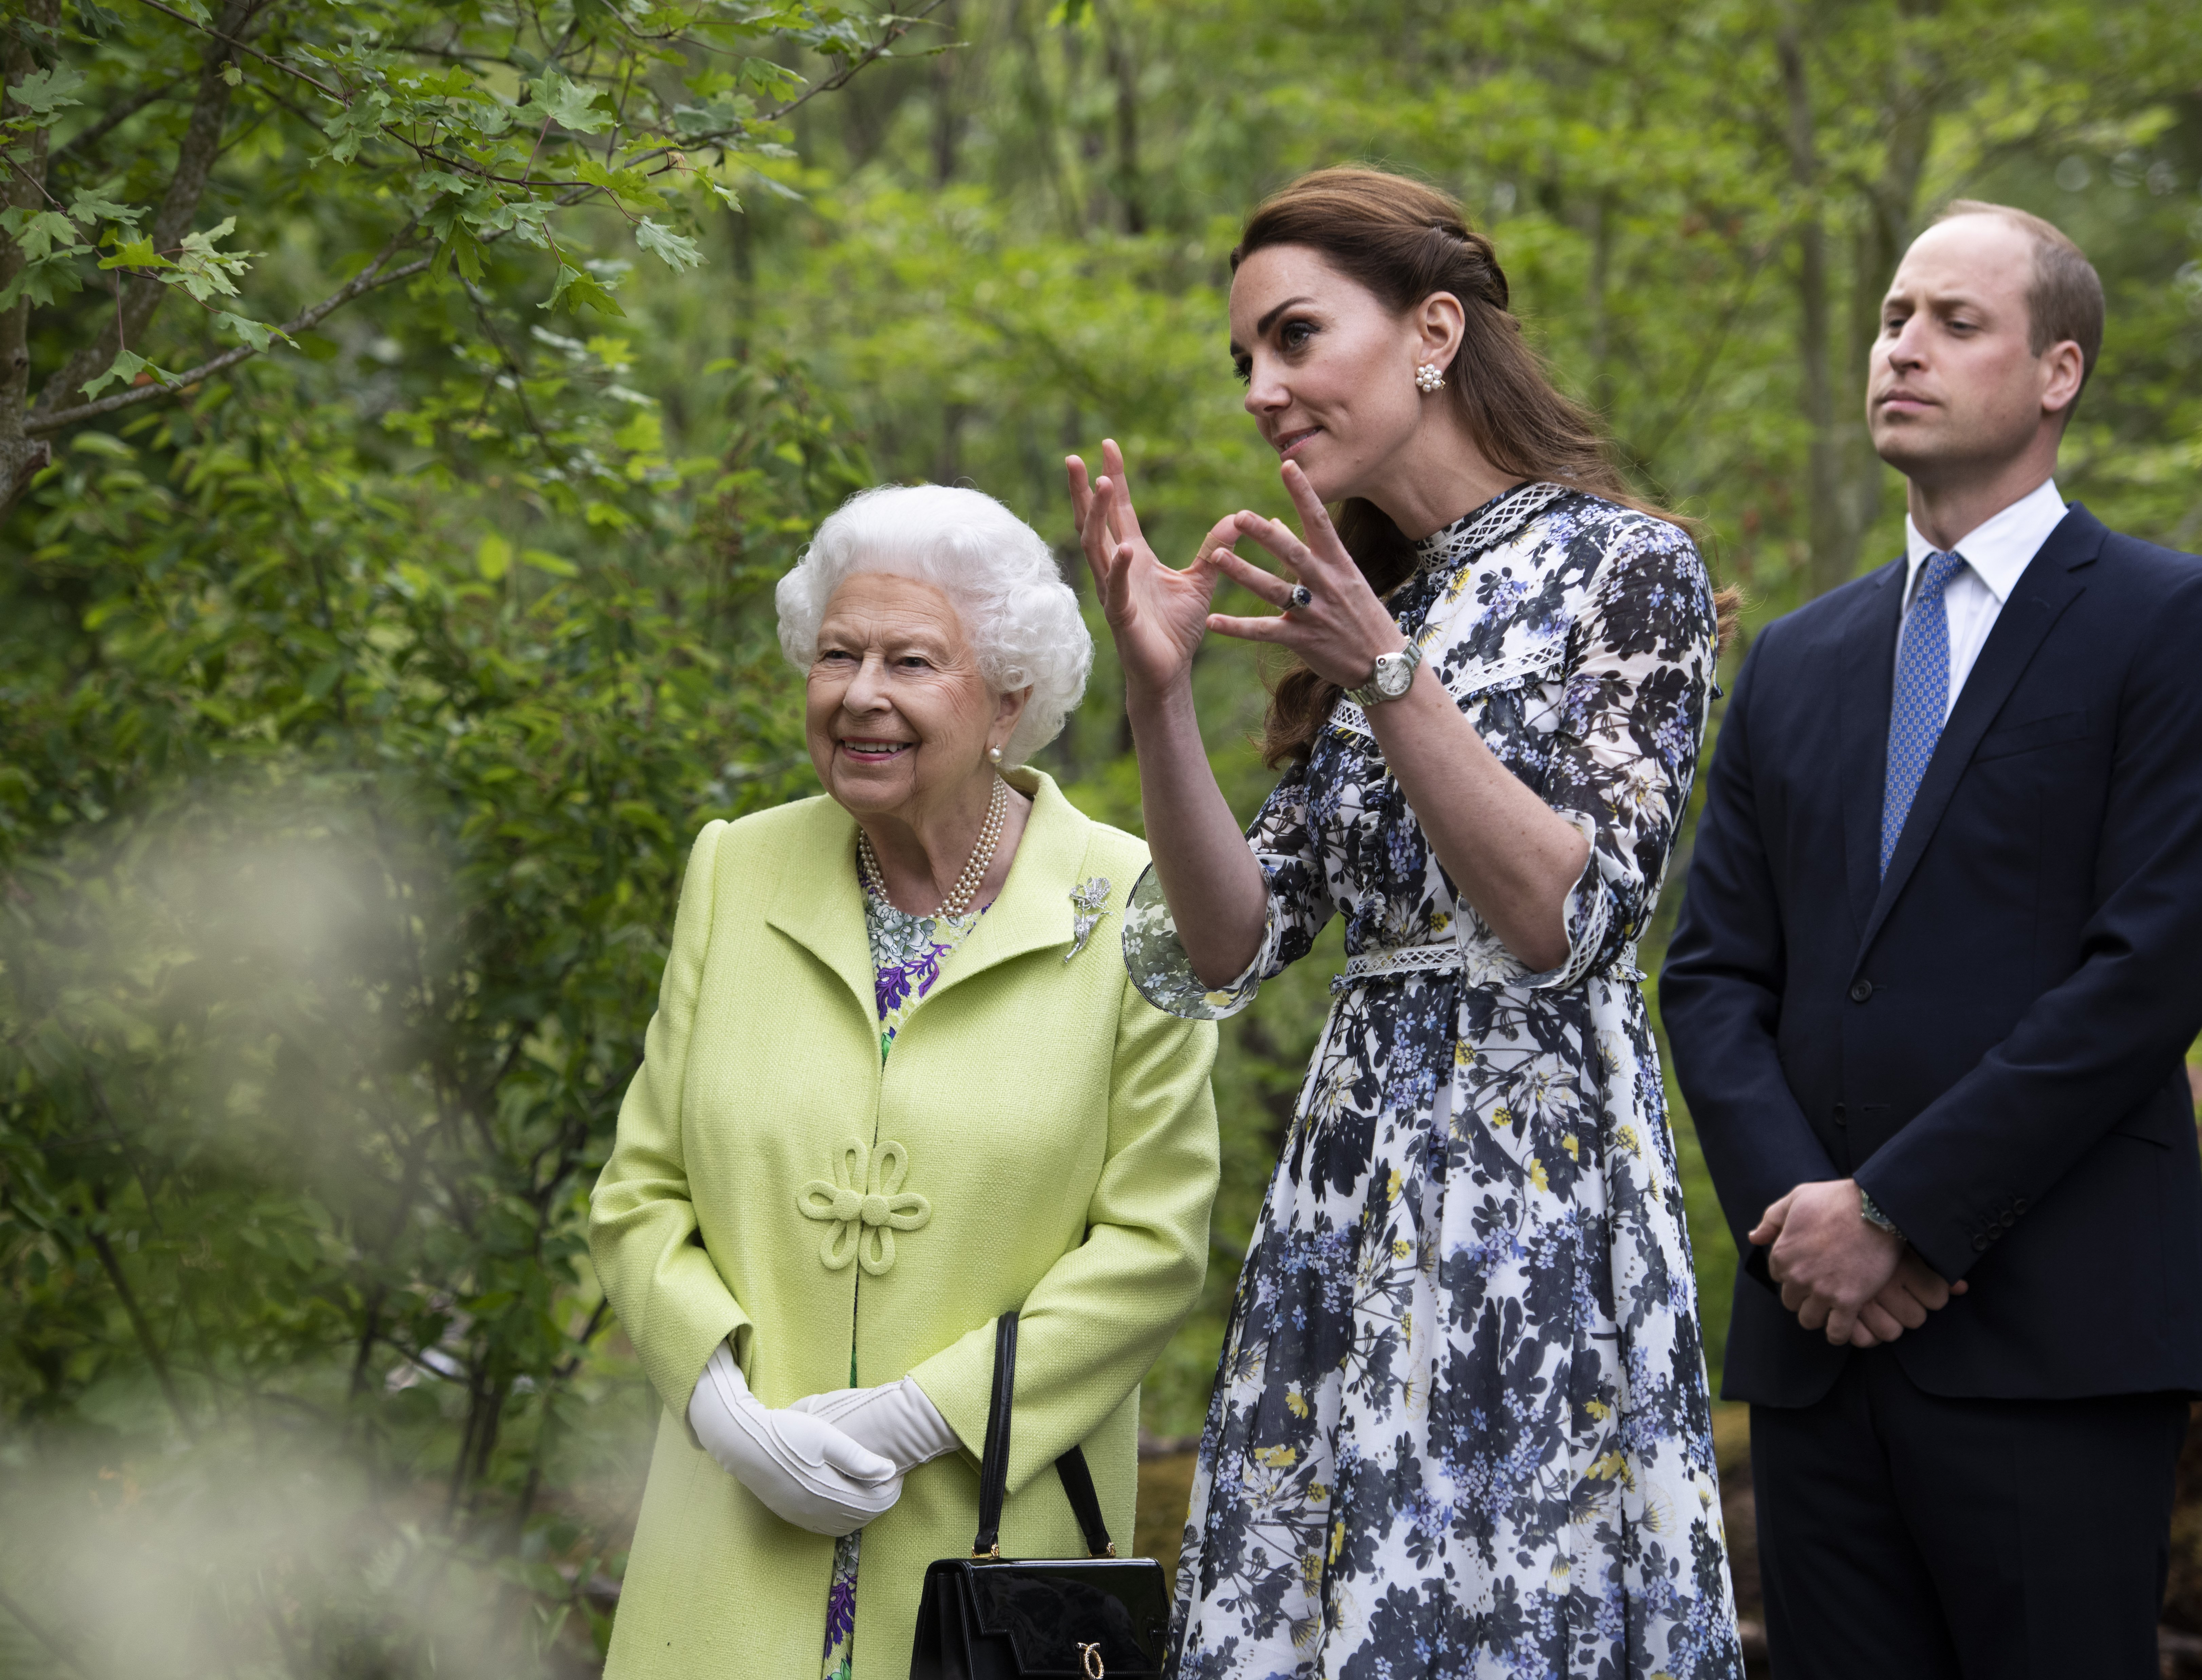 La reina Elizabeth II se muestra alrededor de 'Back to Nature' del príncipe William y Kate, duquesa de Cambridge en el Chelsea Flower Show el 20 de mayo de 2019, en Londres, Inglaterra.| Foto: Getty Images